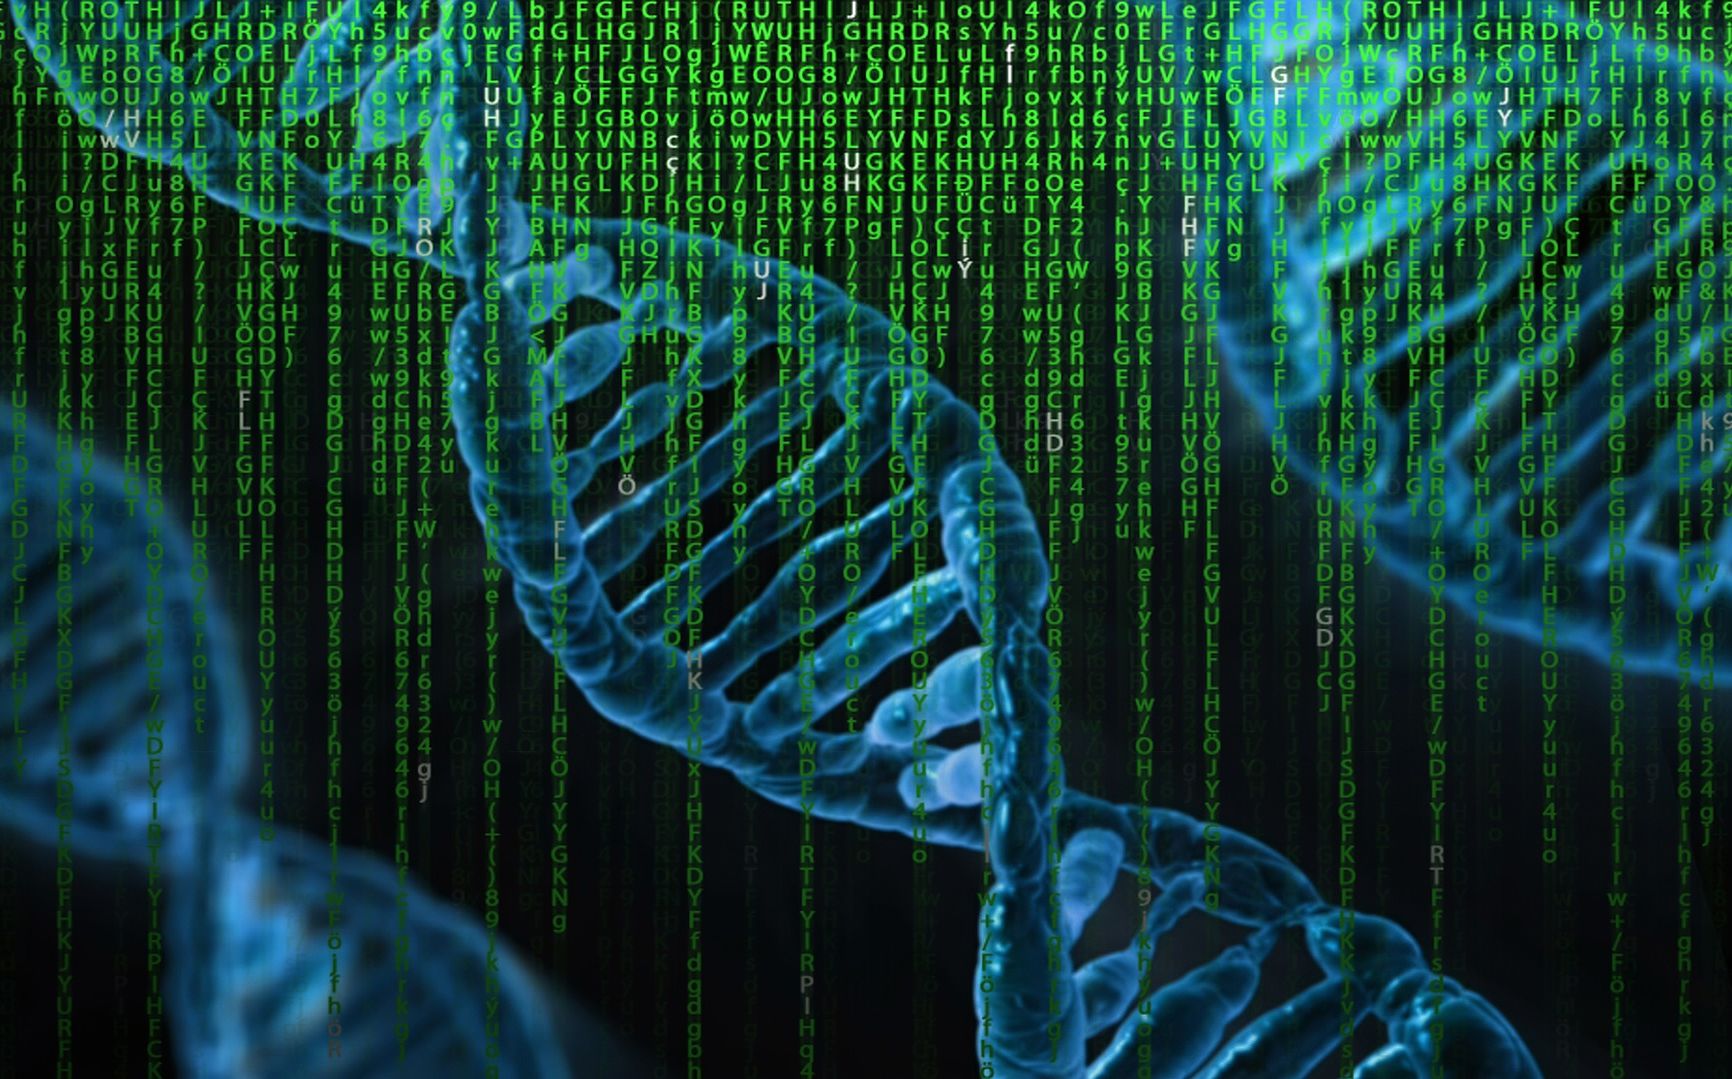 Плотность записи данных в ДНК удалось удвоить